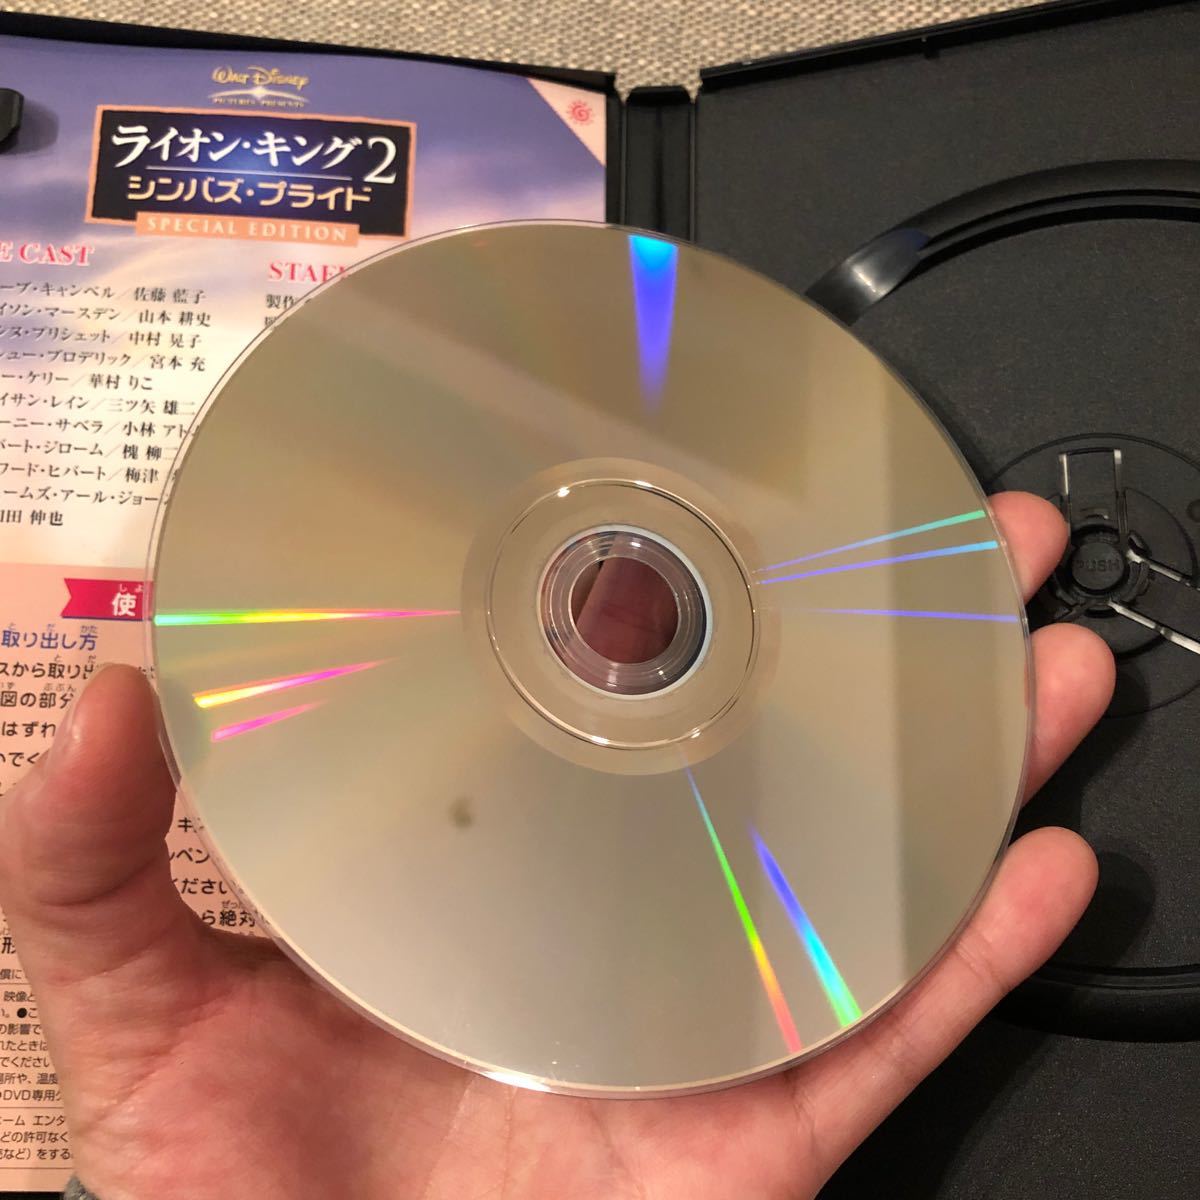 ライオンキング 1.2.3 DVD 5枚セット